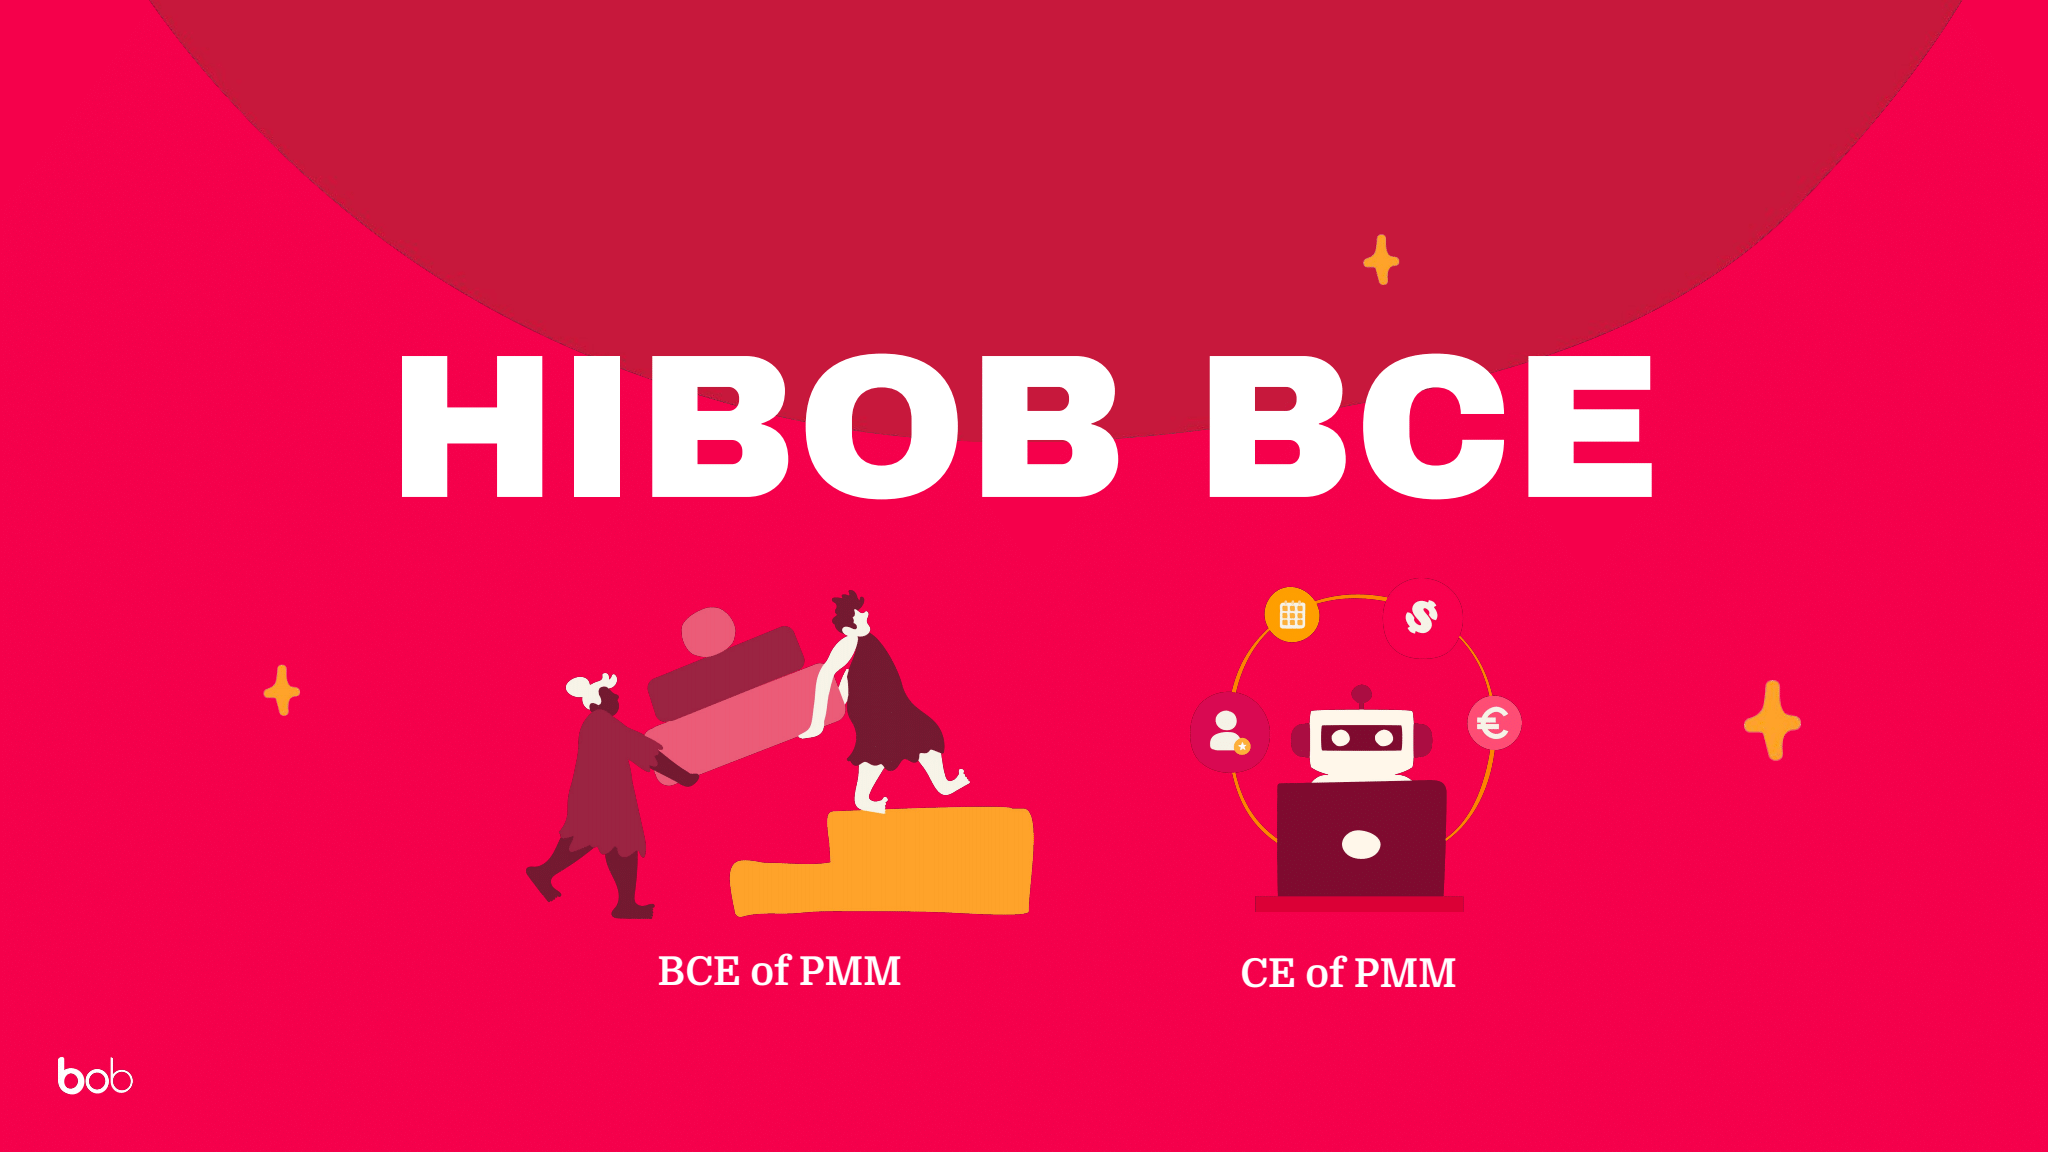 HiBob BCE of PMM